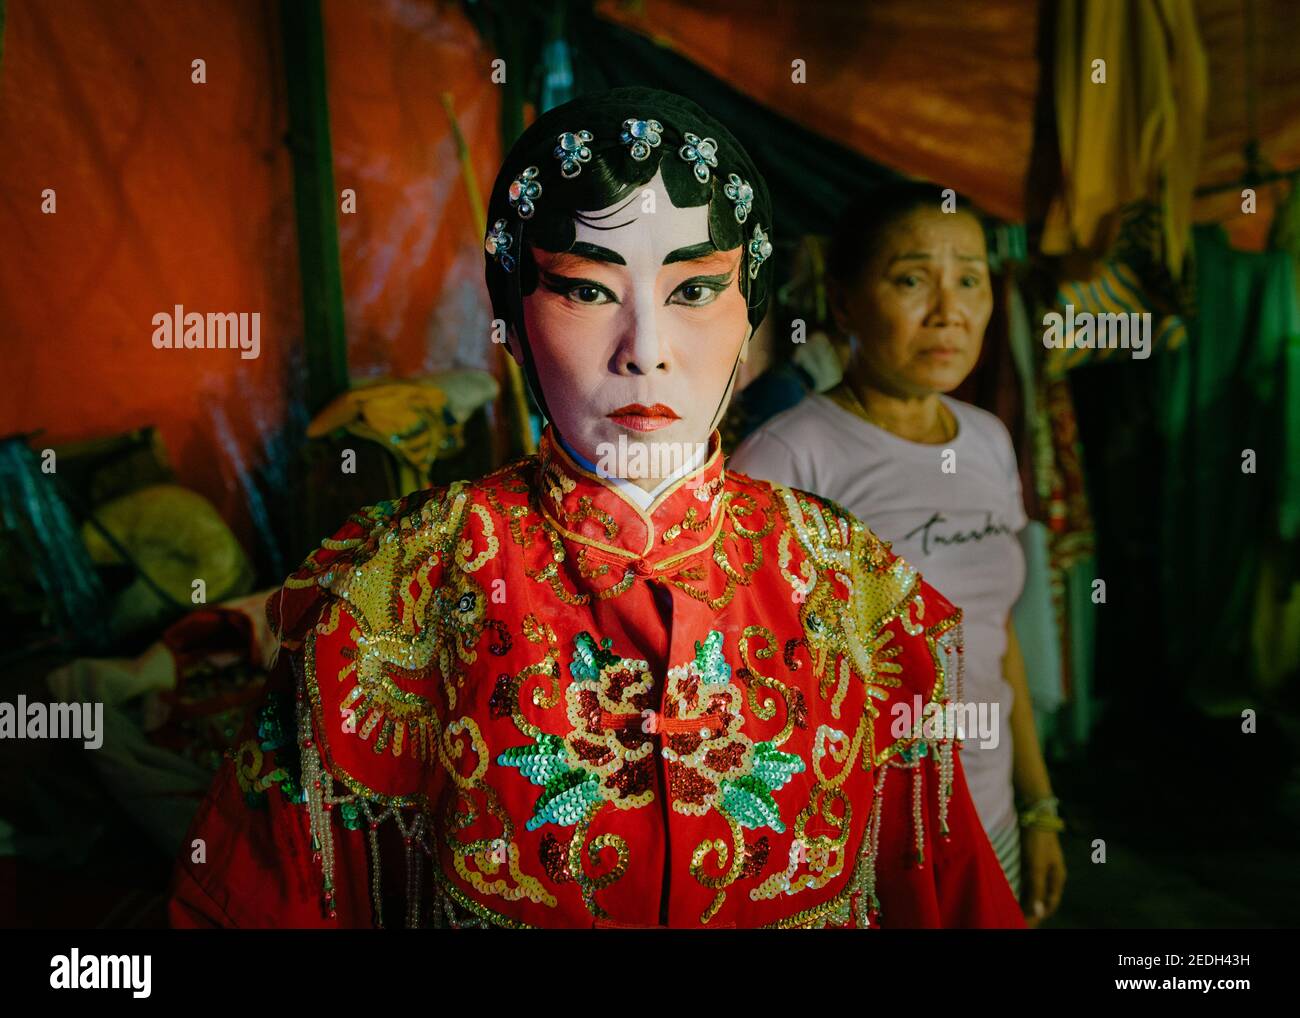 Ritratto di un backstage thailandese di un giocatore d'opera cinese, indossando il suo costume colorato e il trucco, il suo comò è sullo sfondo. Foto Stock